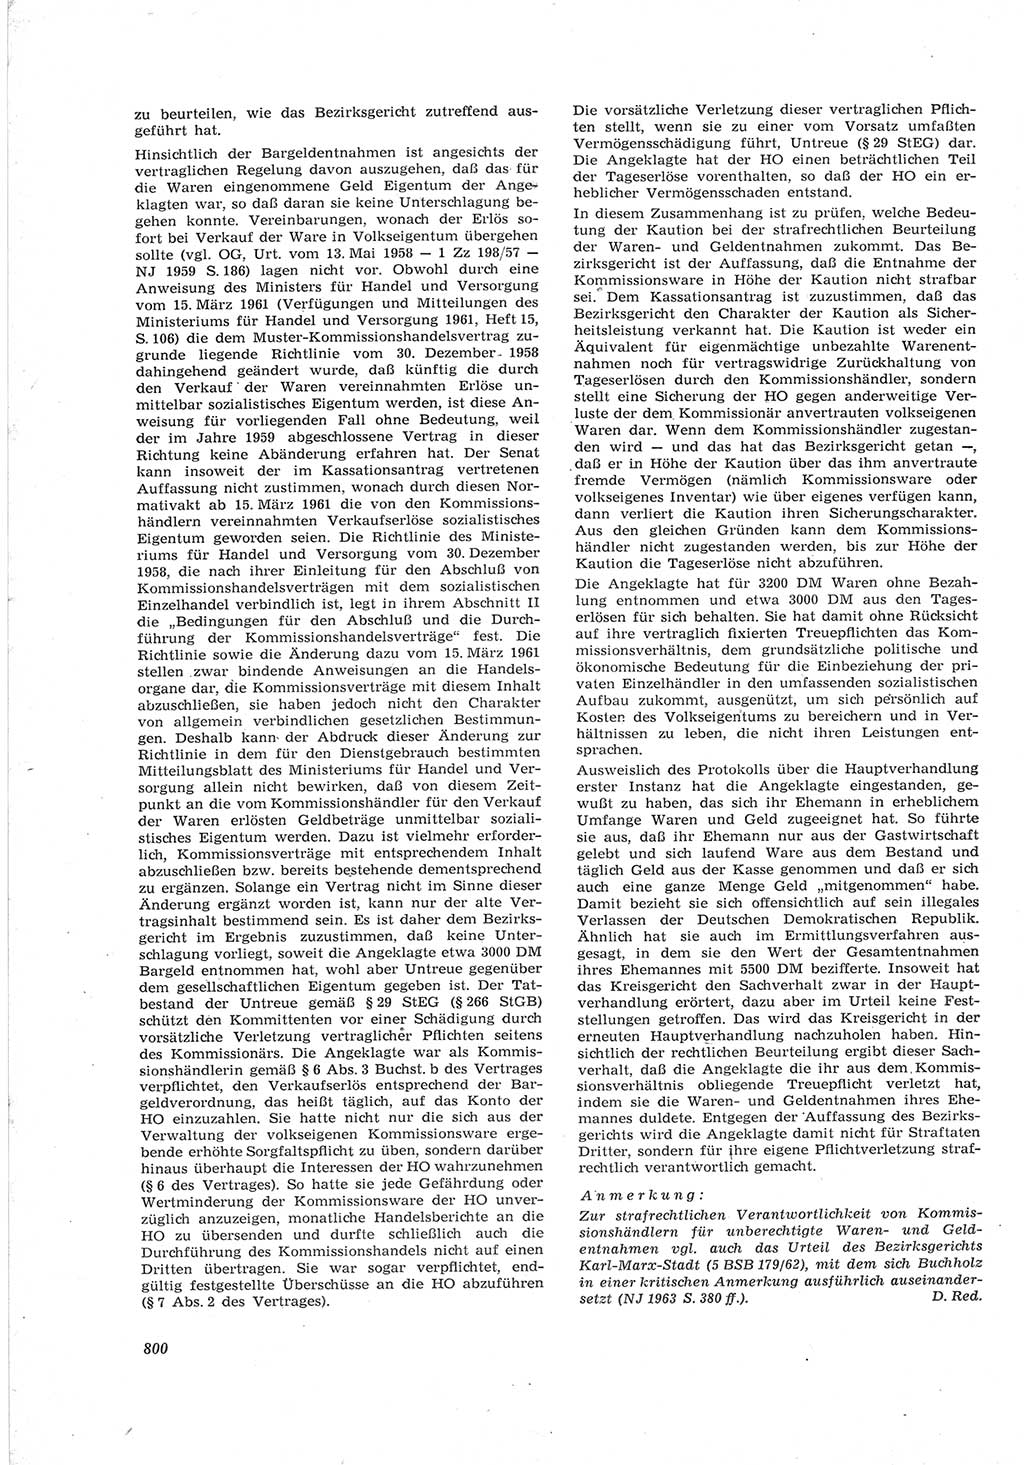 Neue Justiz (NJ), Zeitschrift für Recht und Rechtswissenschaft [Deutsche Demokratische Republik (DDR)], 17. Jahrgang 1963, Seite 800 (NJ DDR 1963, S. 800)